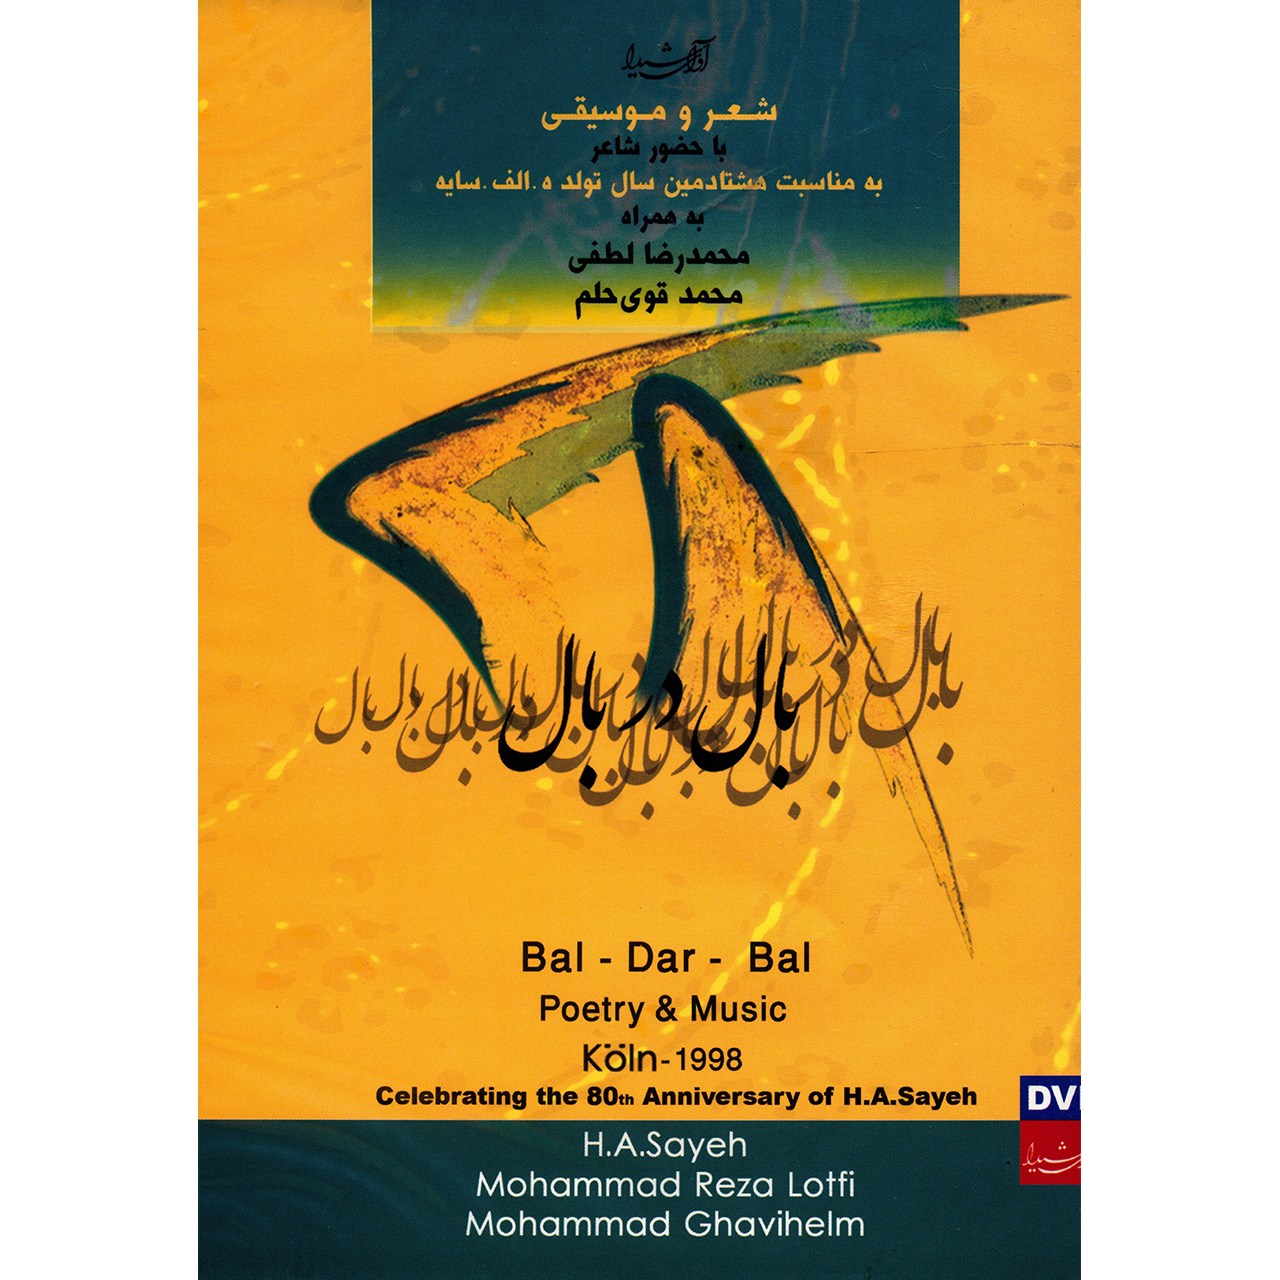 آلبوم تصویری کنسرت بال در بال اثر محمد رضا لطفی